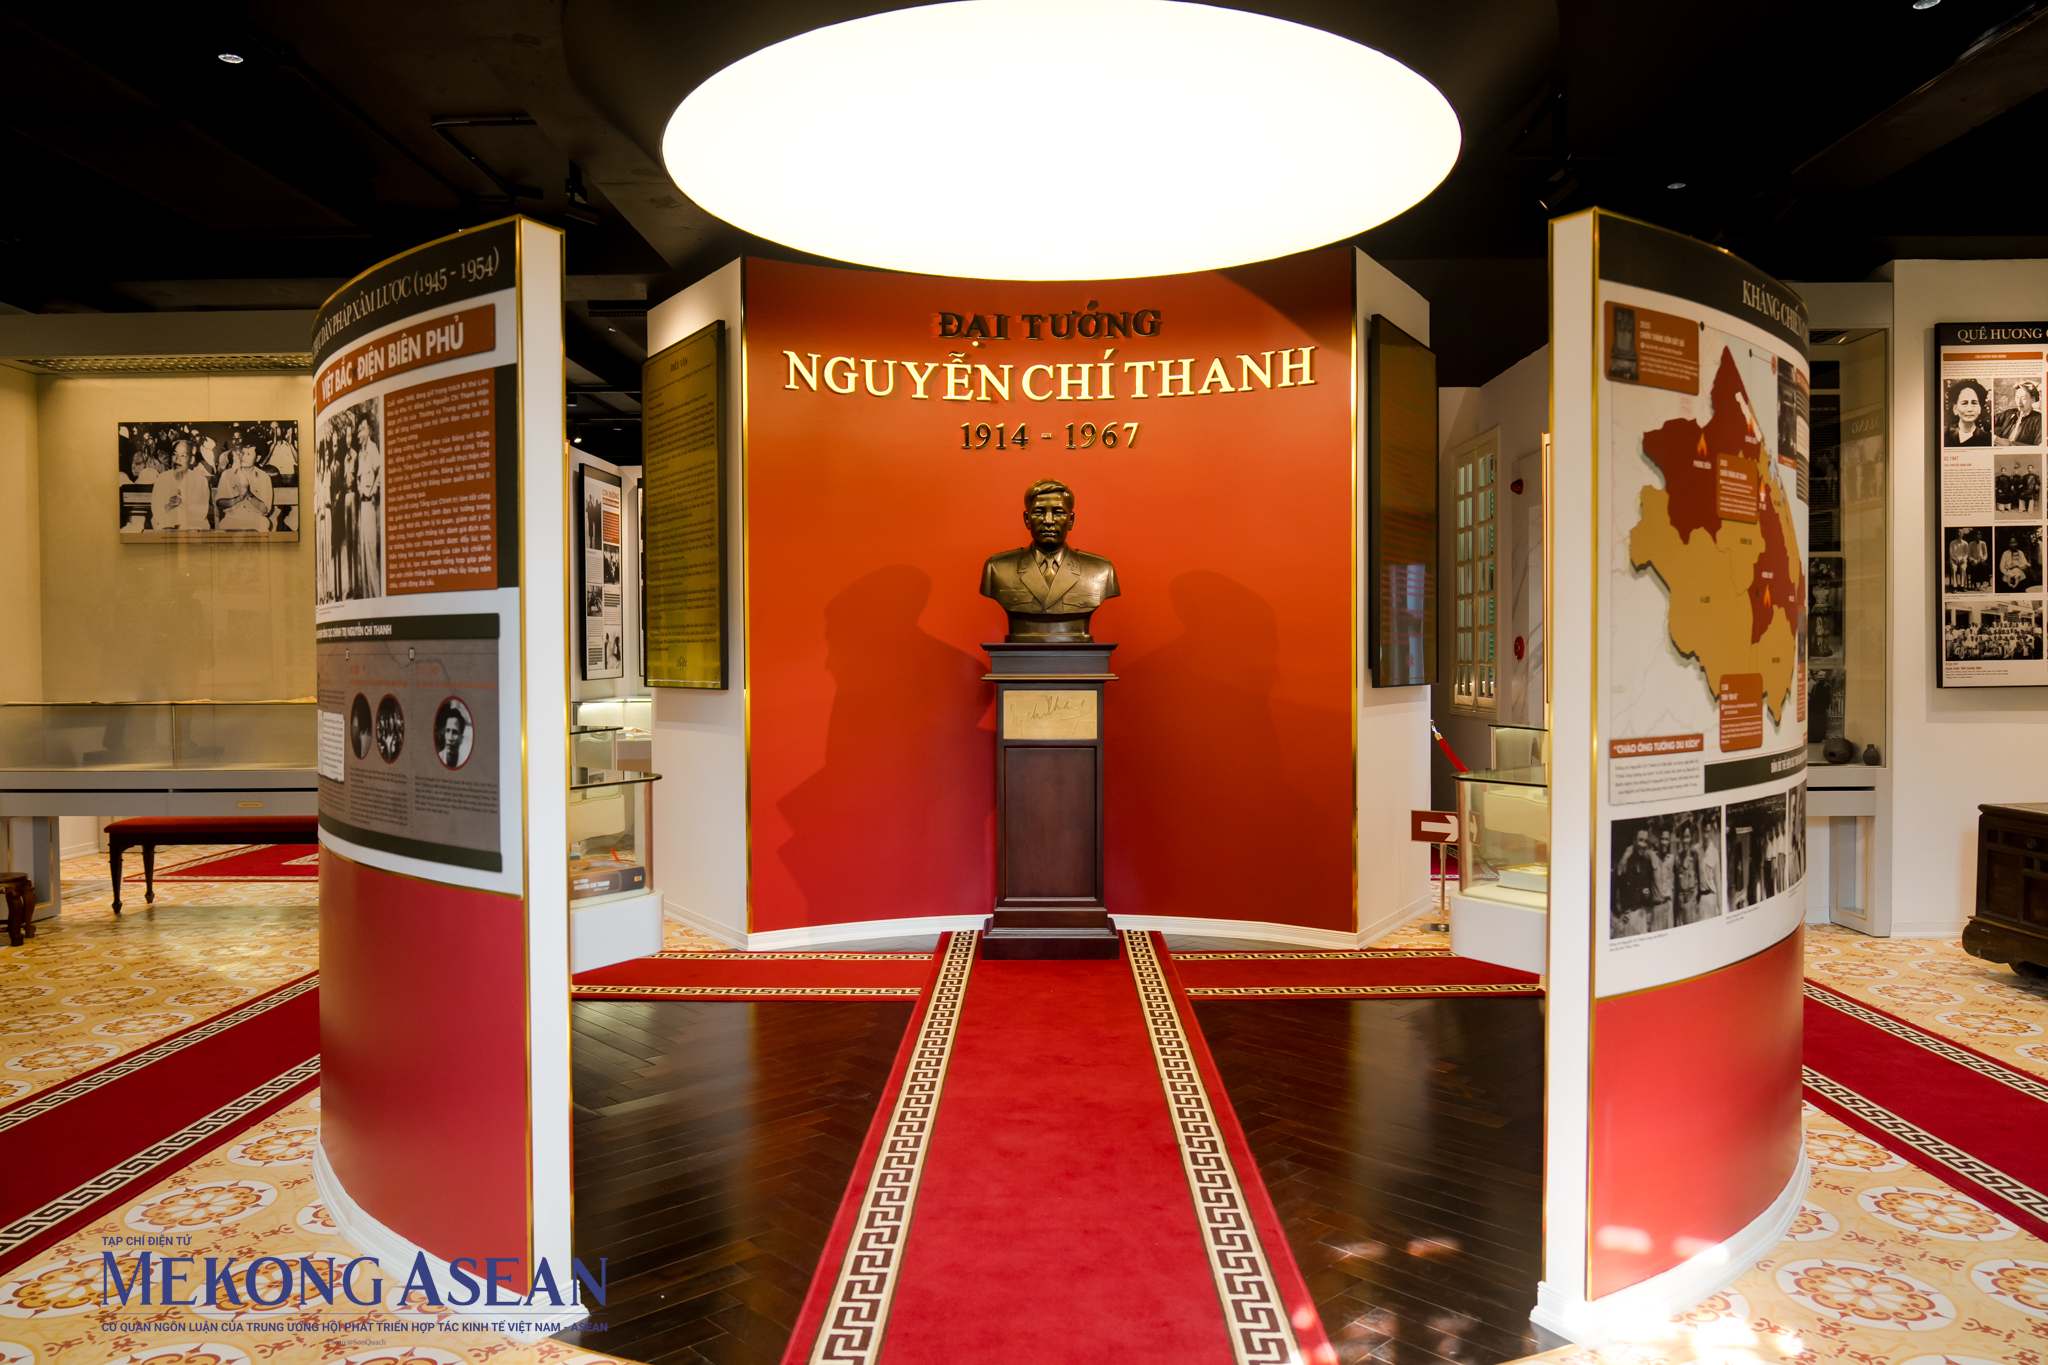 Bảo tàng được gia đình Đại tướng Nguyễn Chí Thanh xây dựng tại địa chỉ số 81 Tân Nhuệ, phường Thuỵ Phương, quận Bắc Từ Liêm, Hà Nội. 